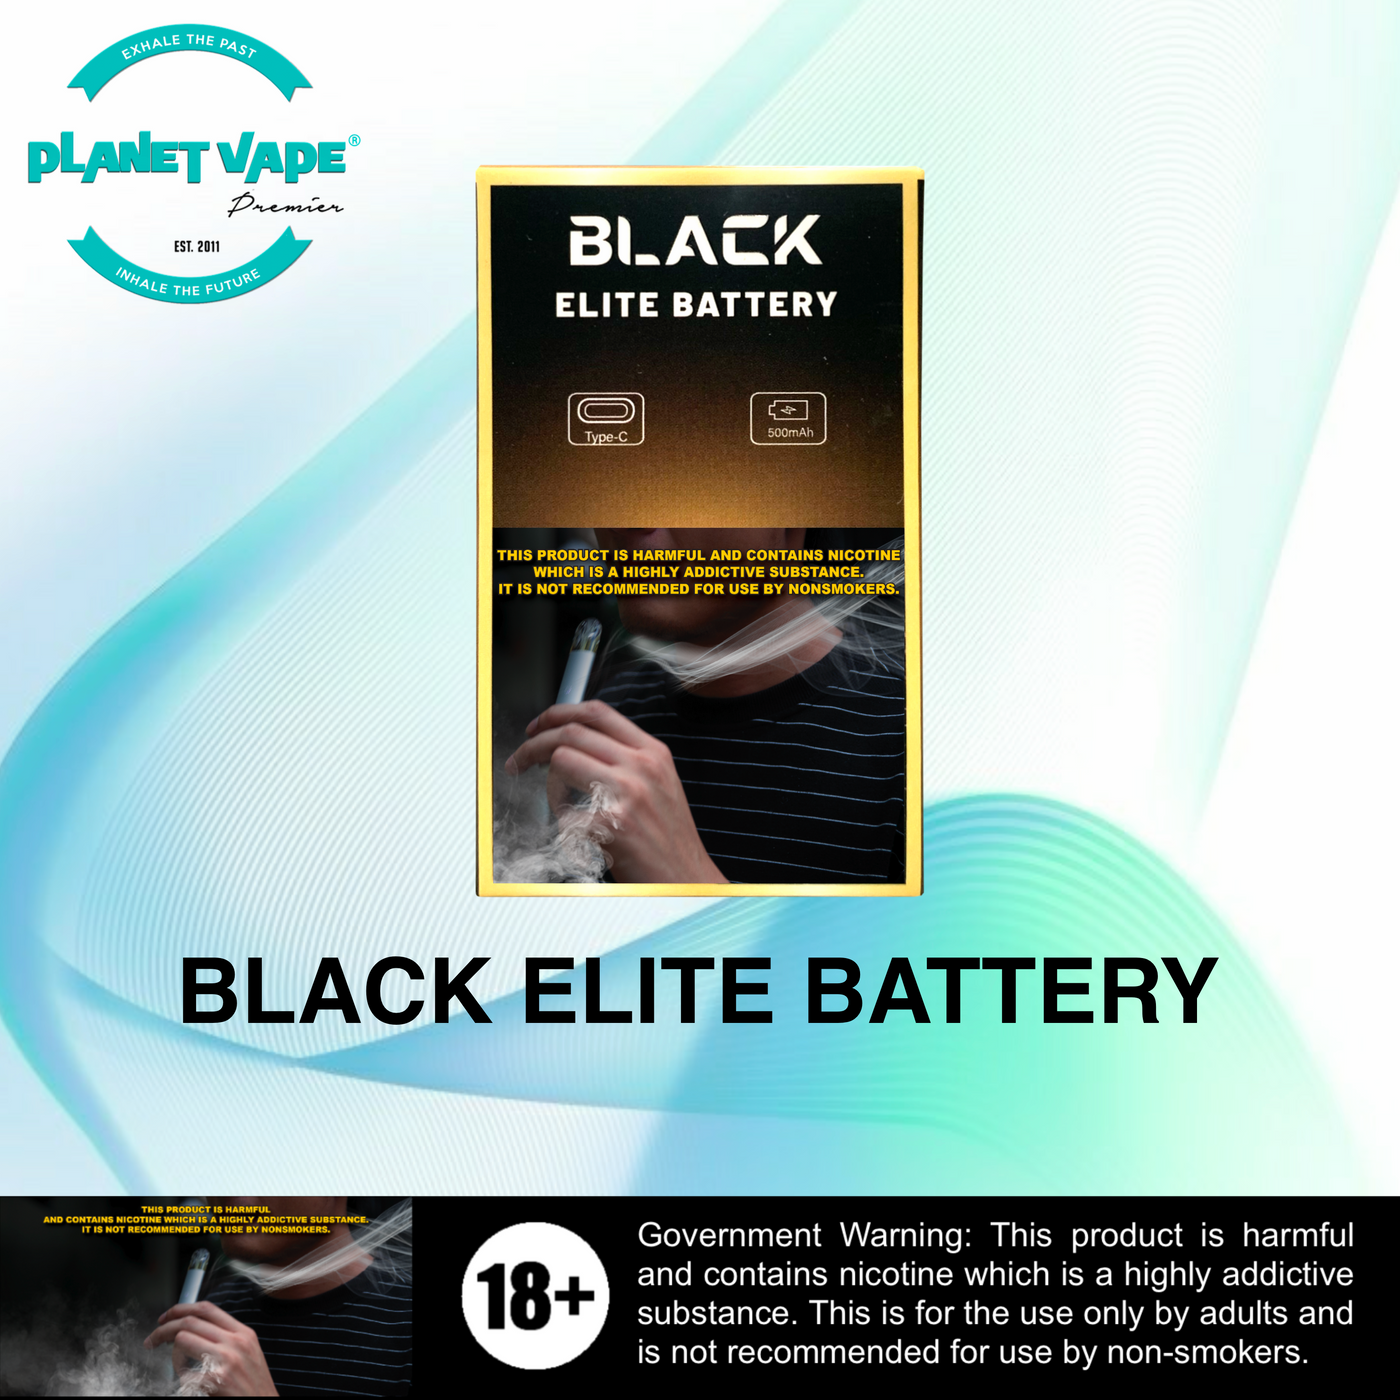 Black Elite Battery